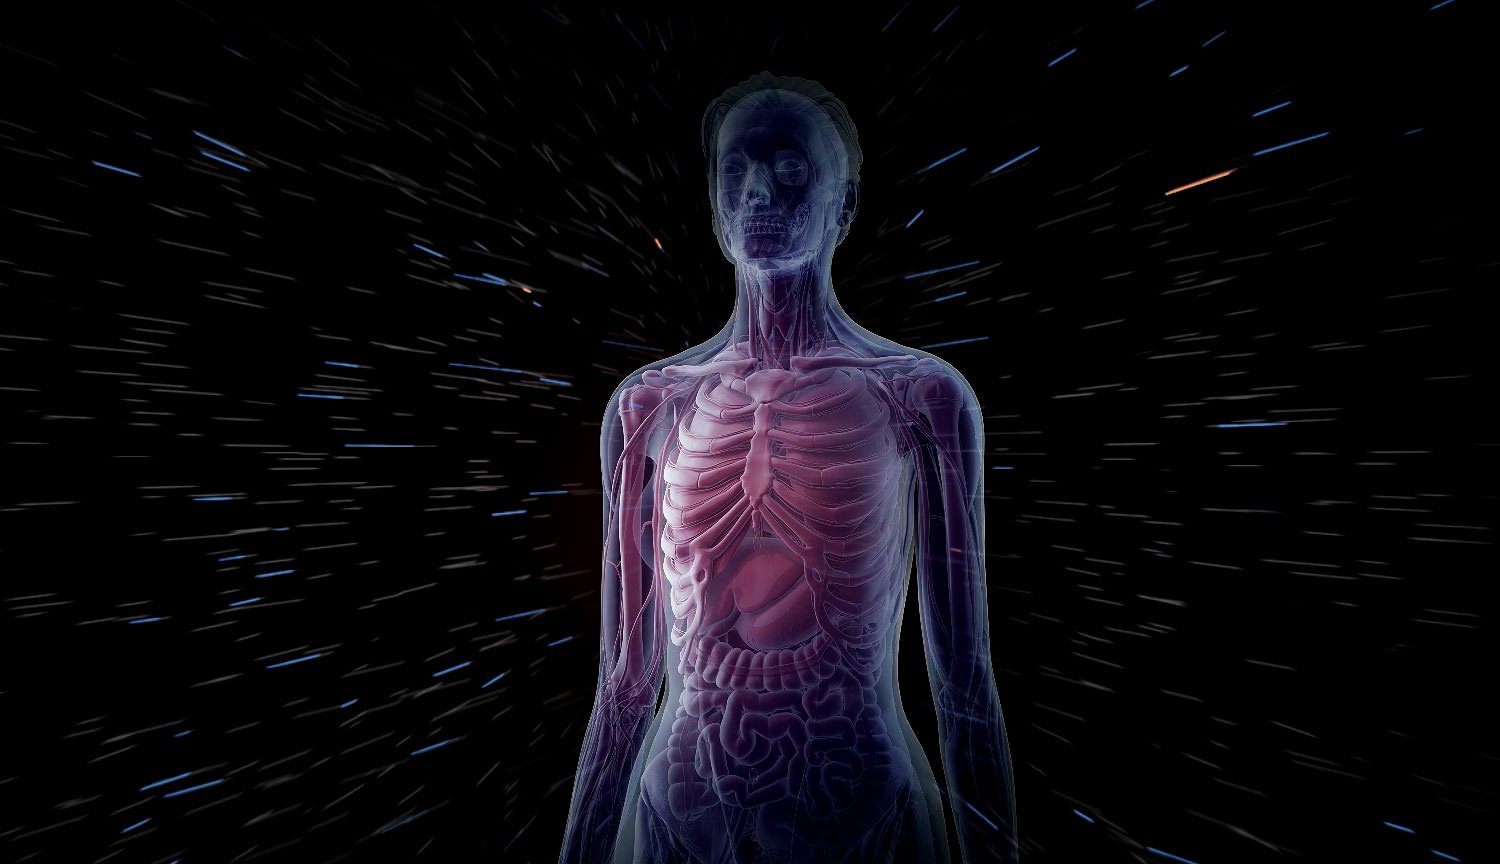 वैज्ञानिकों ने विकसित सबसे विस्तृत 3 डी मॉडल के साथ मानव शरीर